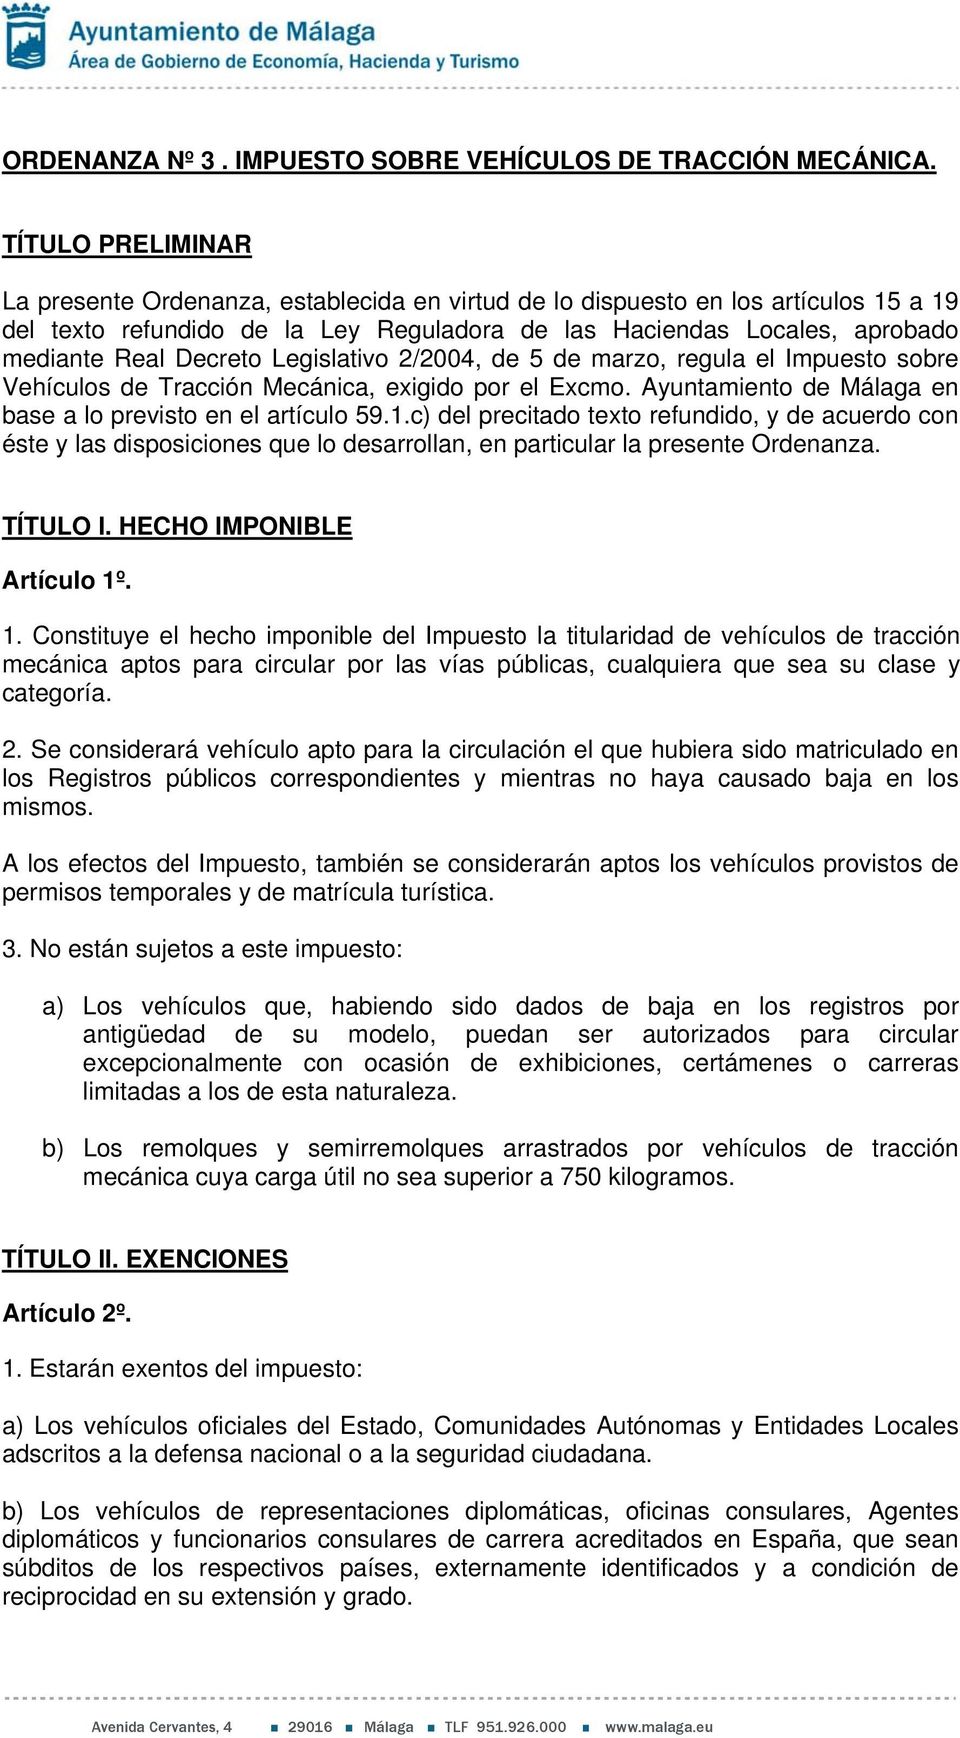 Decreto Legislativo 2/2004, de 5 de marzo, regula el Impuesto sobre Vehículos de Tracción Mecánica, exigido por el Excmo. Ayuntamiento de Málaga en base a lo previsto en el artículo 59.1.